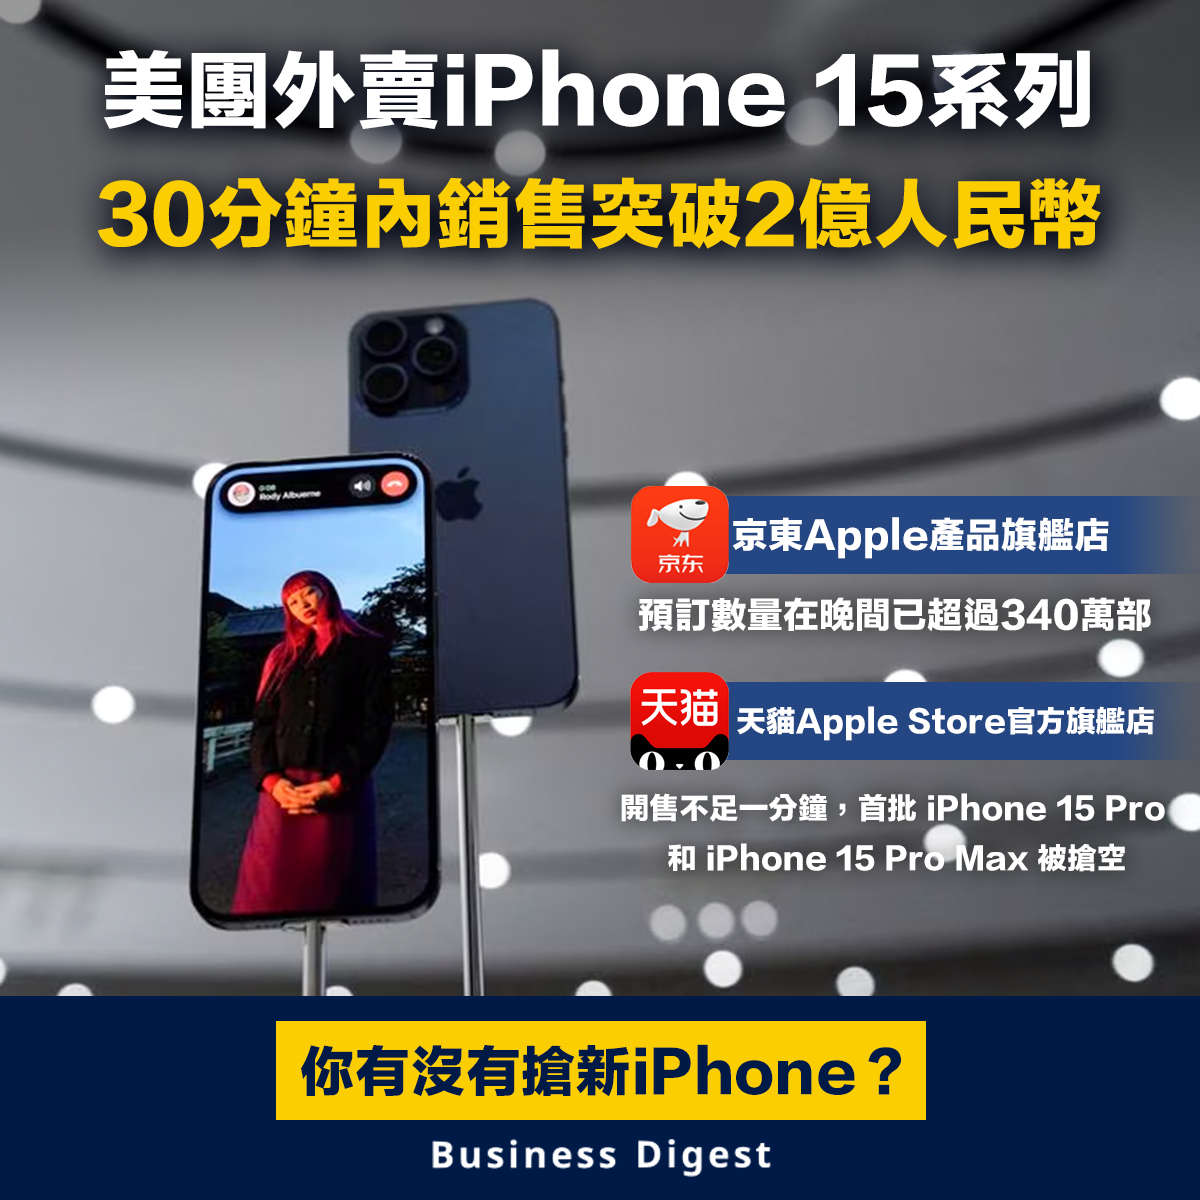 【新iPhone】美團外賣iPhone 15系列30分鐘內銷售突破2億人民幣